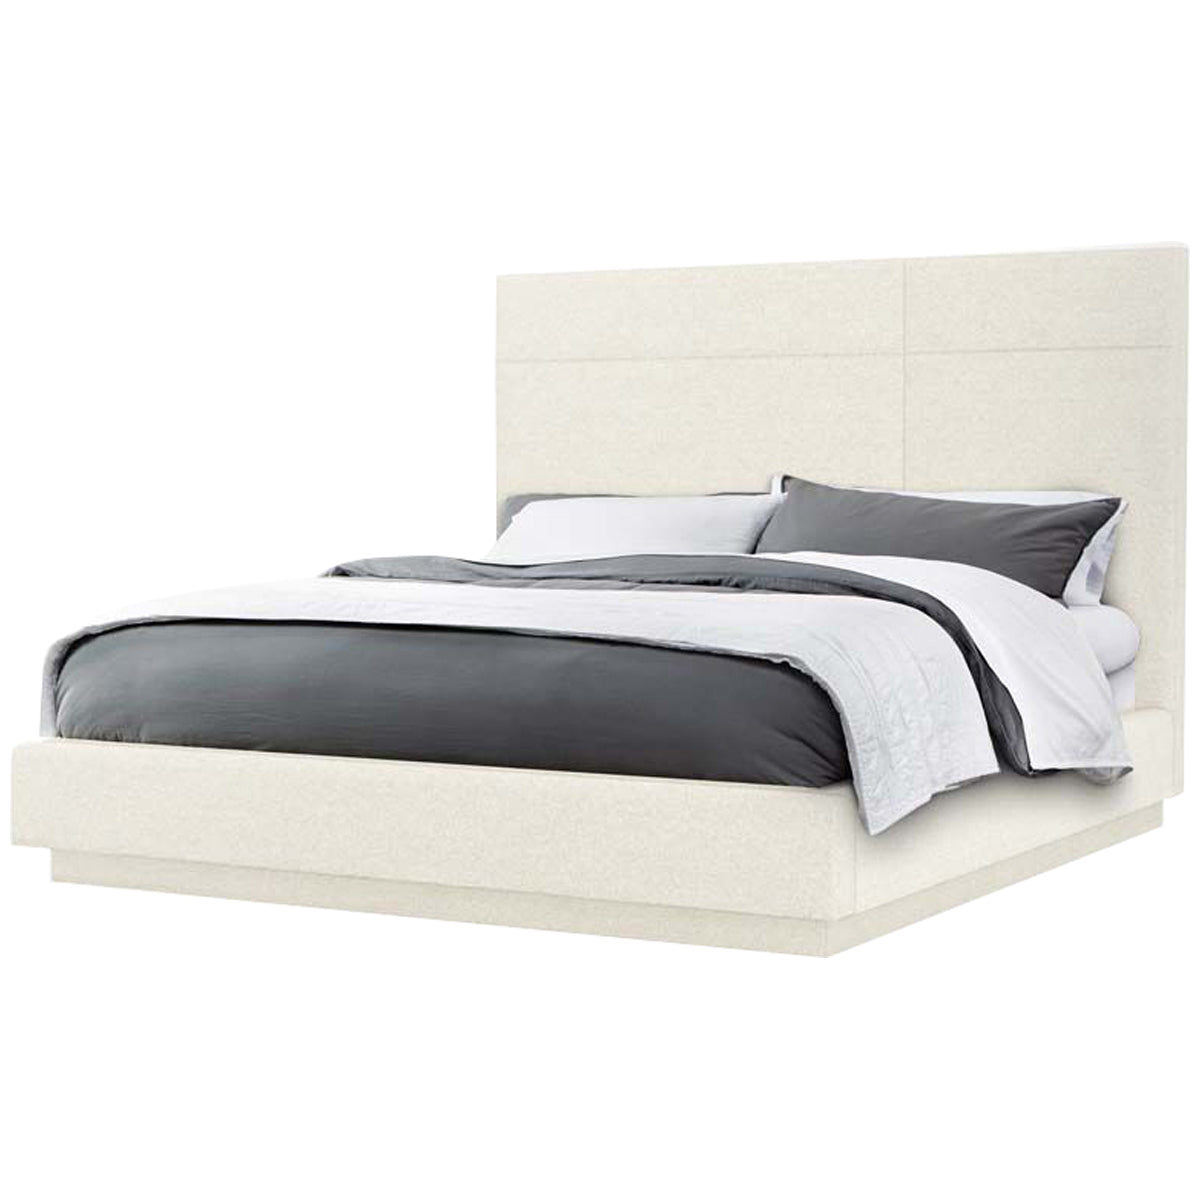 Interlude Home Quadrant Bed - Foam